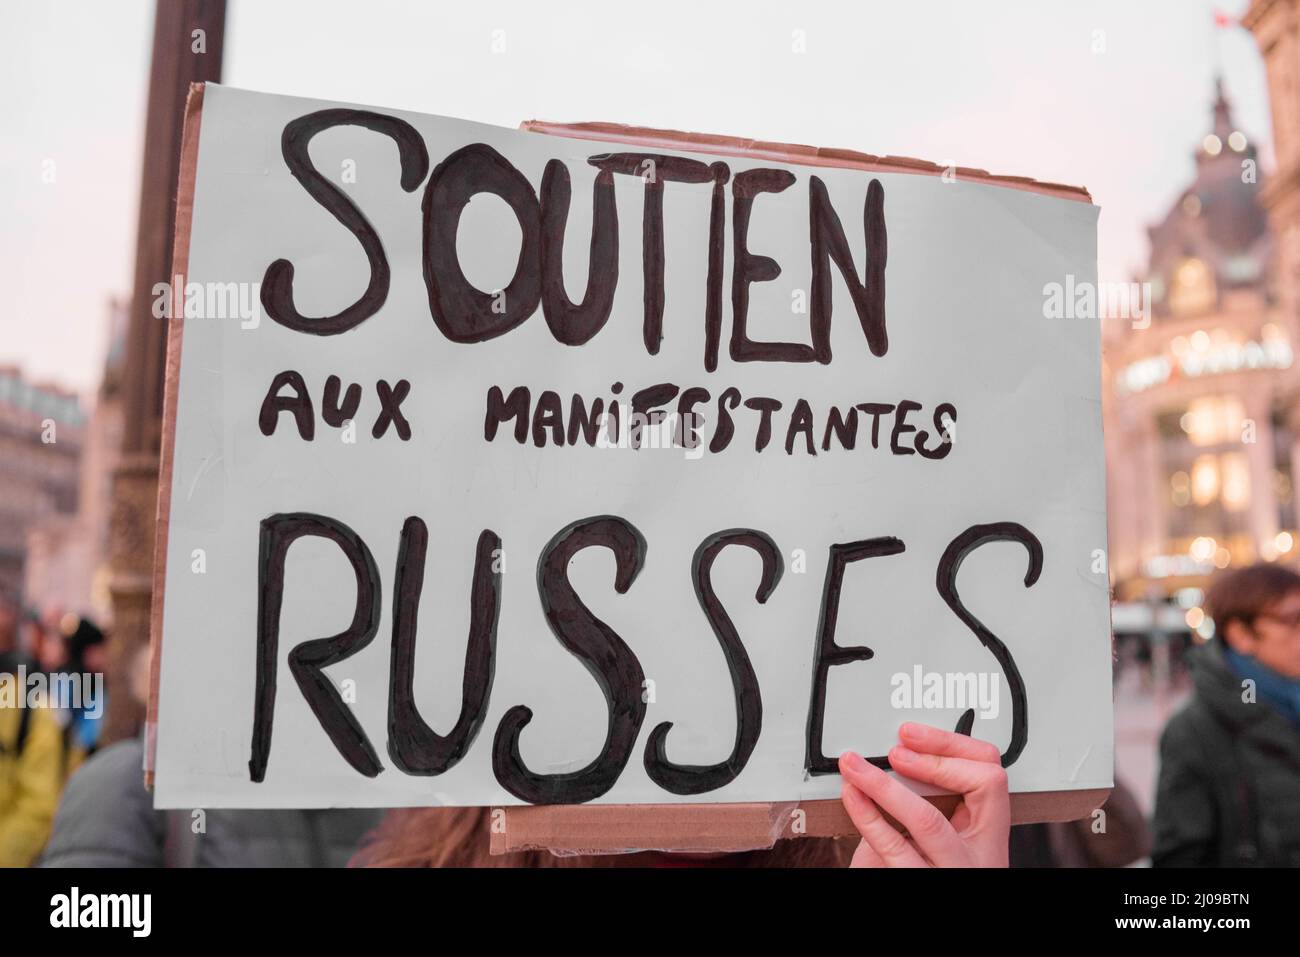 Rassemblement STOP poutine - STOP la guerre ! Solidarité avec l’Ukraine, Hôtel de Ville, 75004 Paris, France. Stock Photo